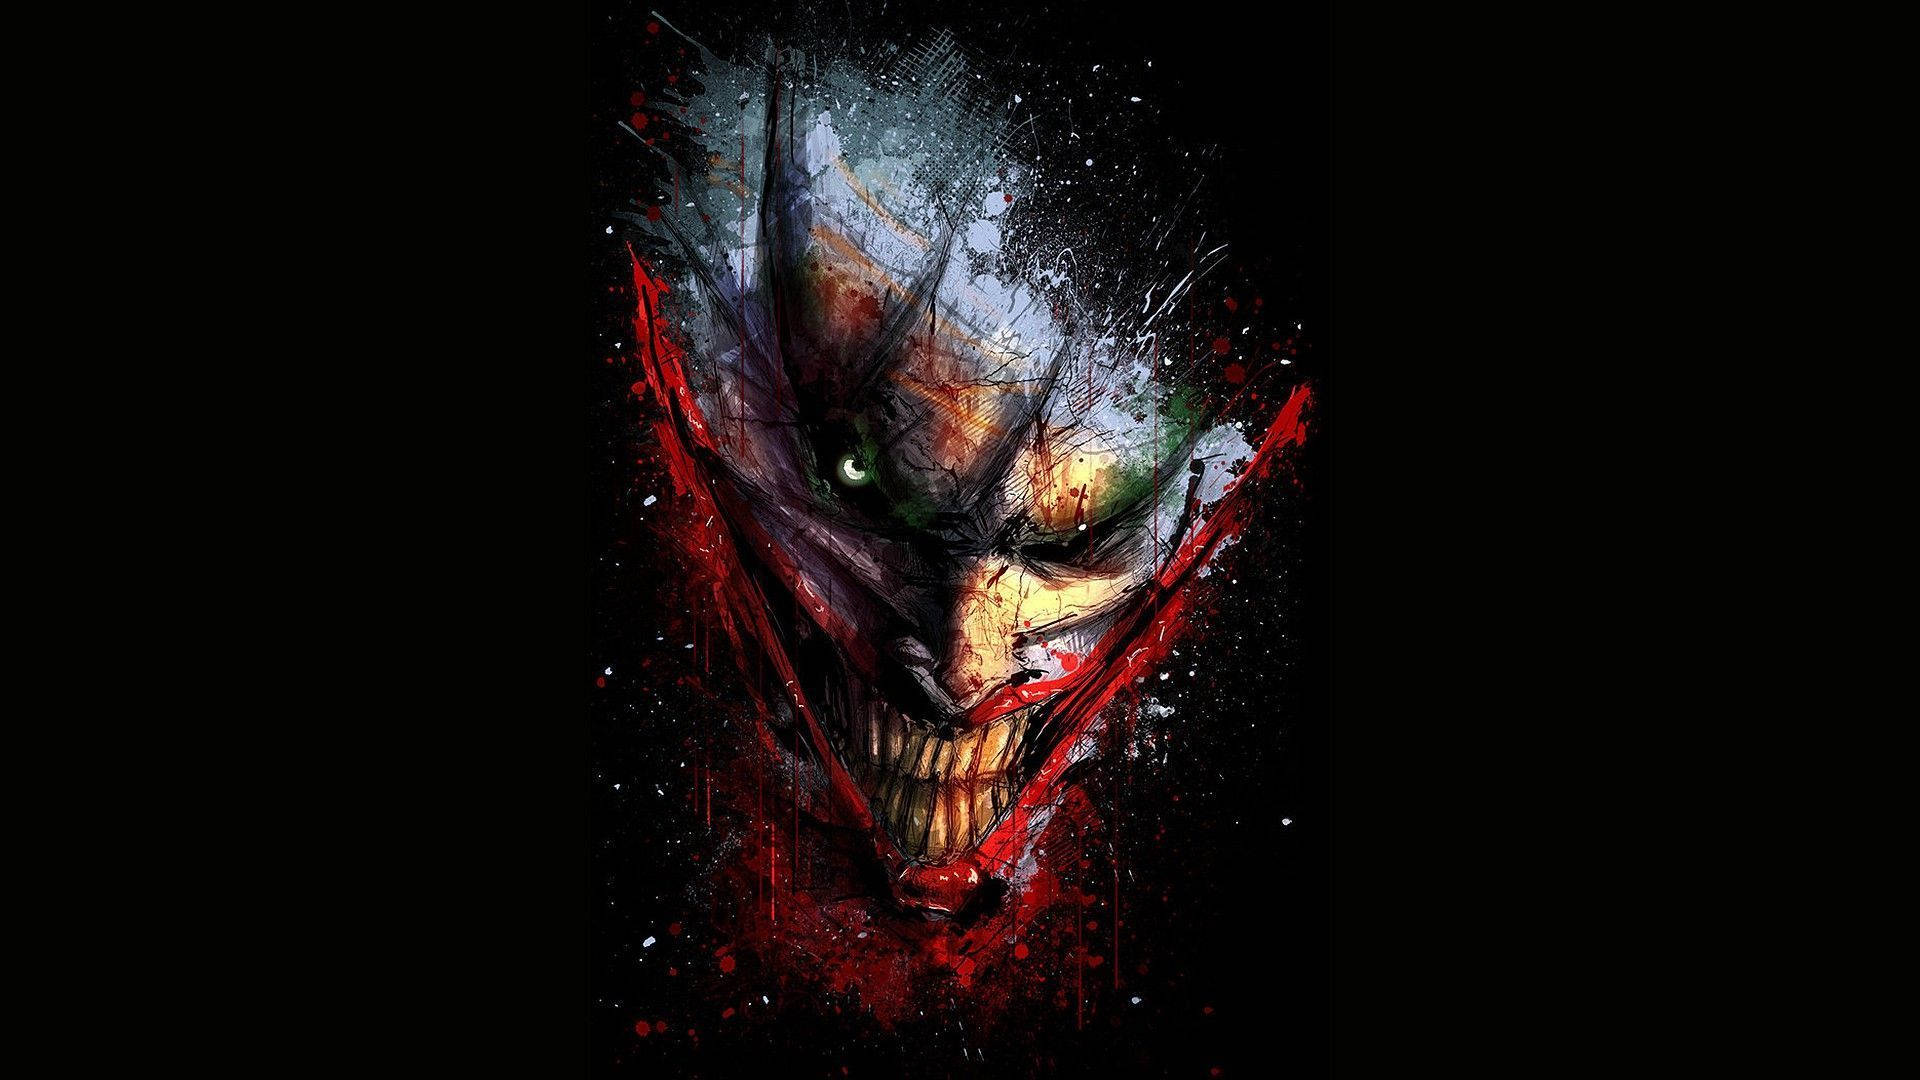 Joker's Skinned Face